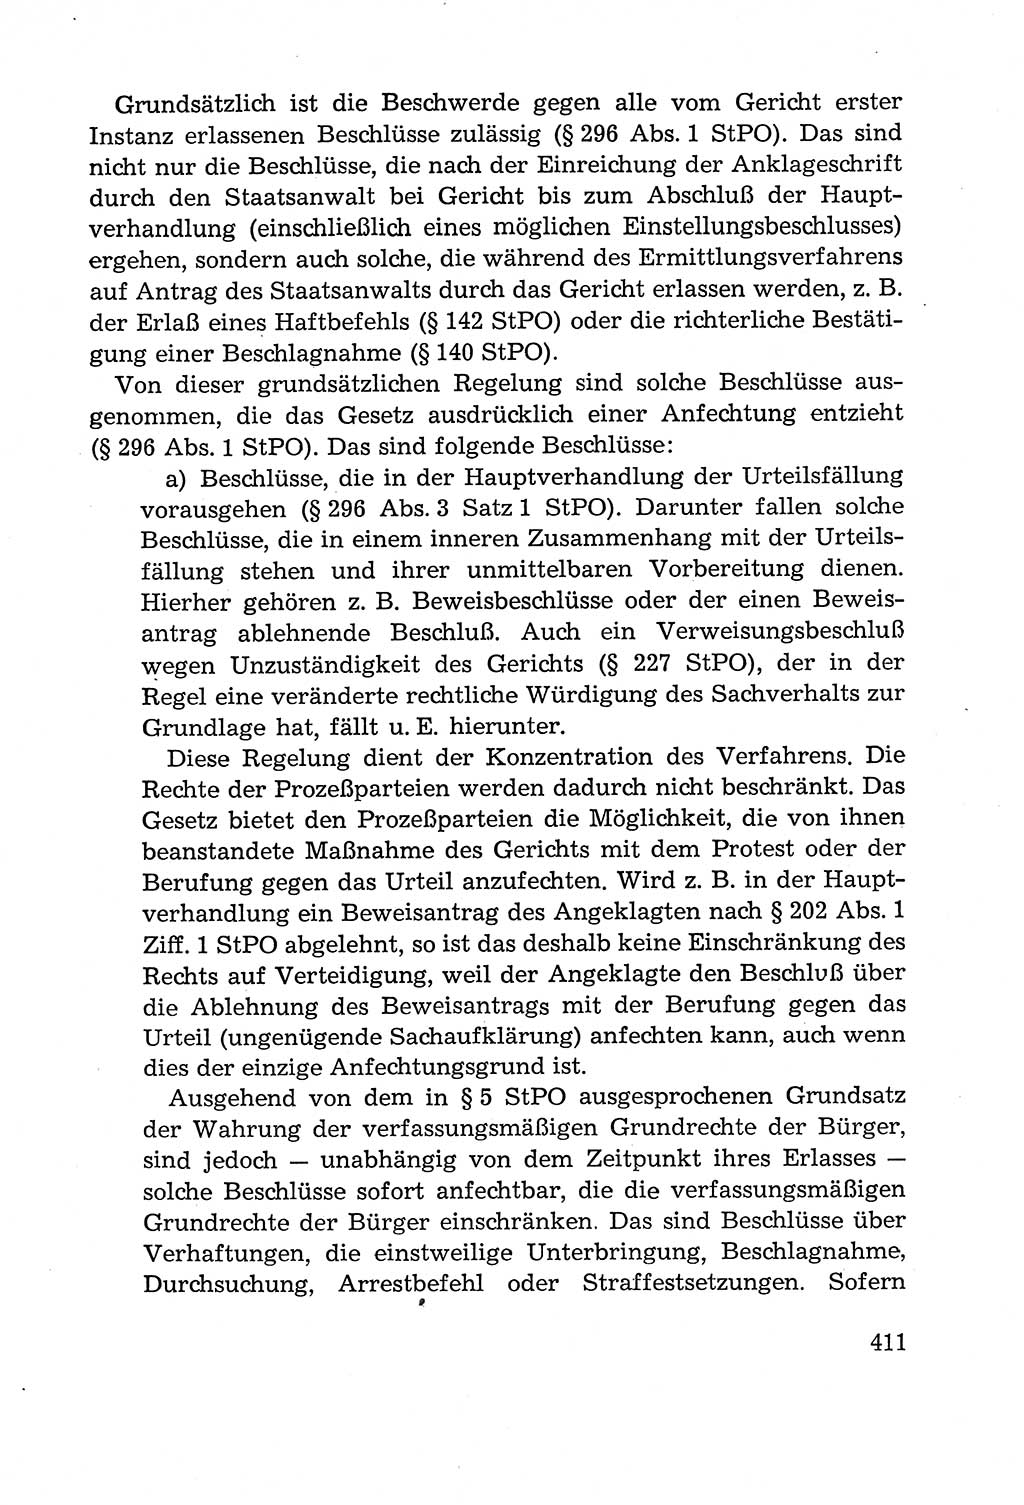 Leitfaden des Strafprozeßrechts der Deutschen Demokratischen Republik (DDR) 1959, Seite 411 (LF StPR DDR 1959, S. 411)